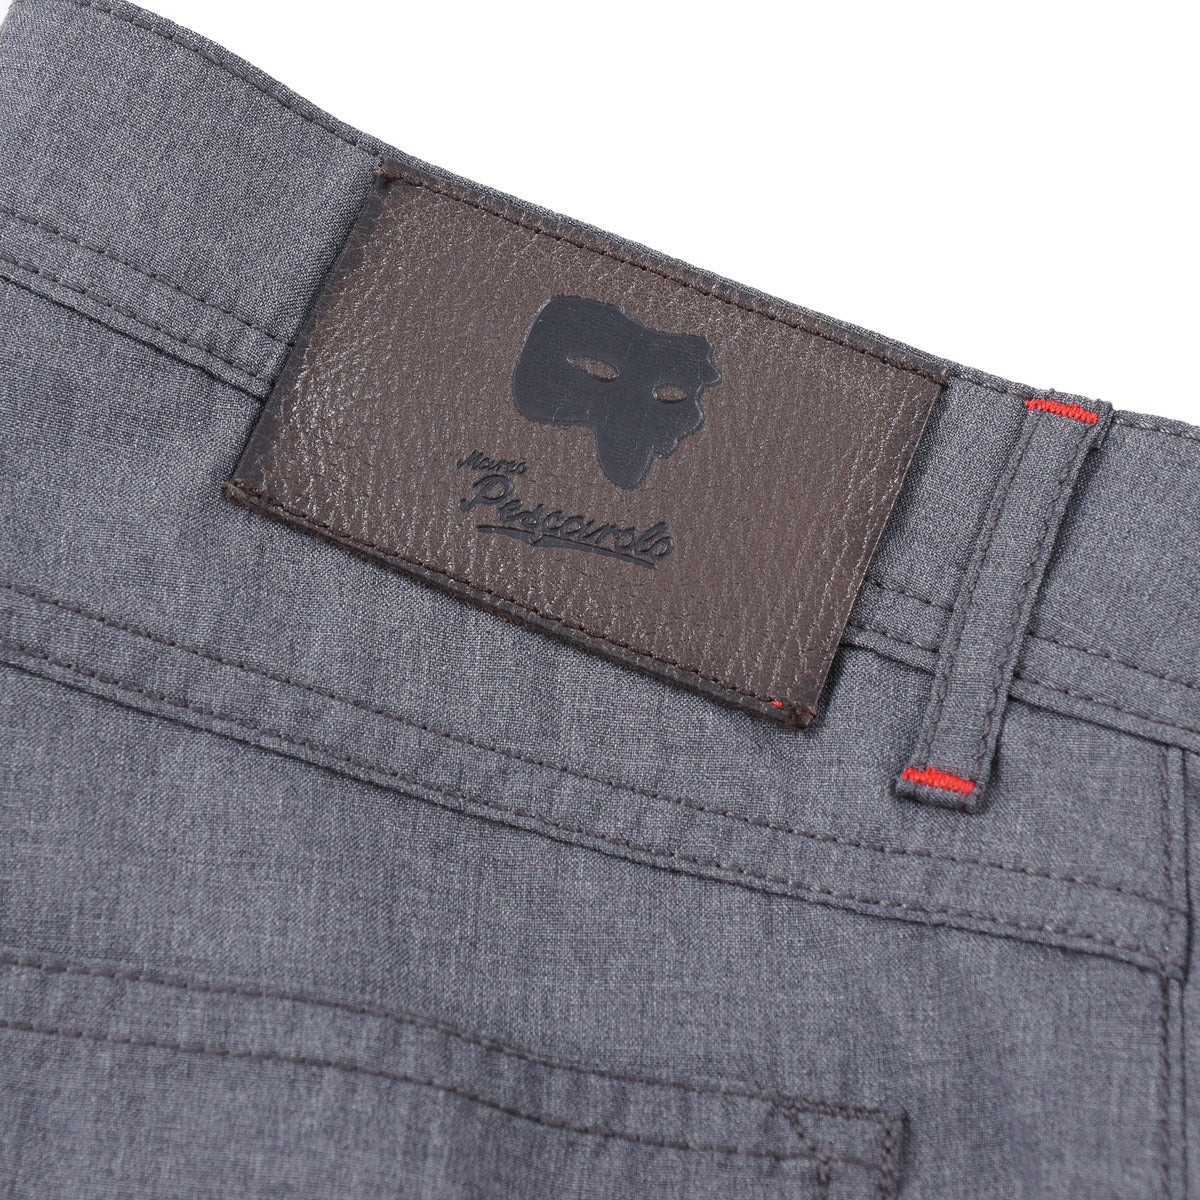 Marco Pescarolo Lightweight Wool Jeans - Top Shelf Apparel